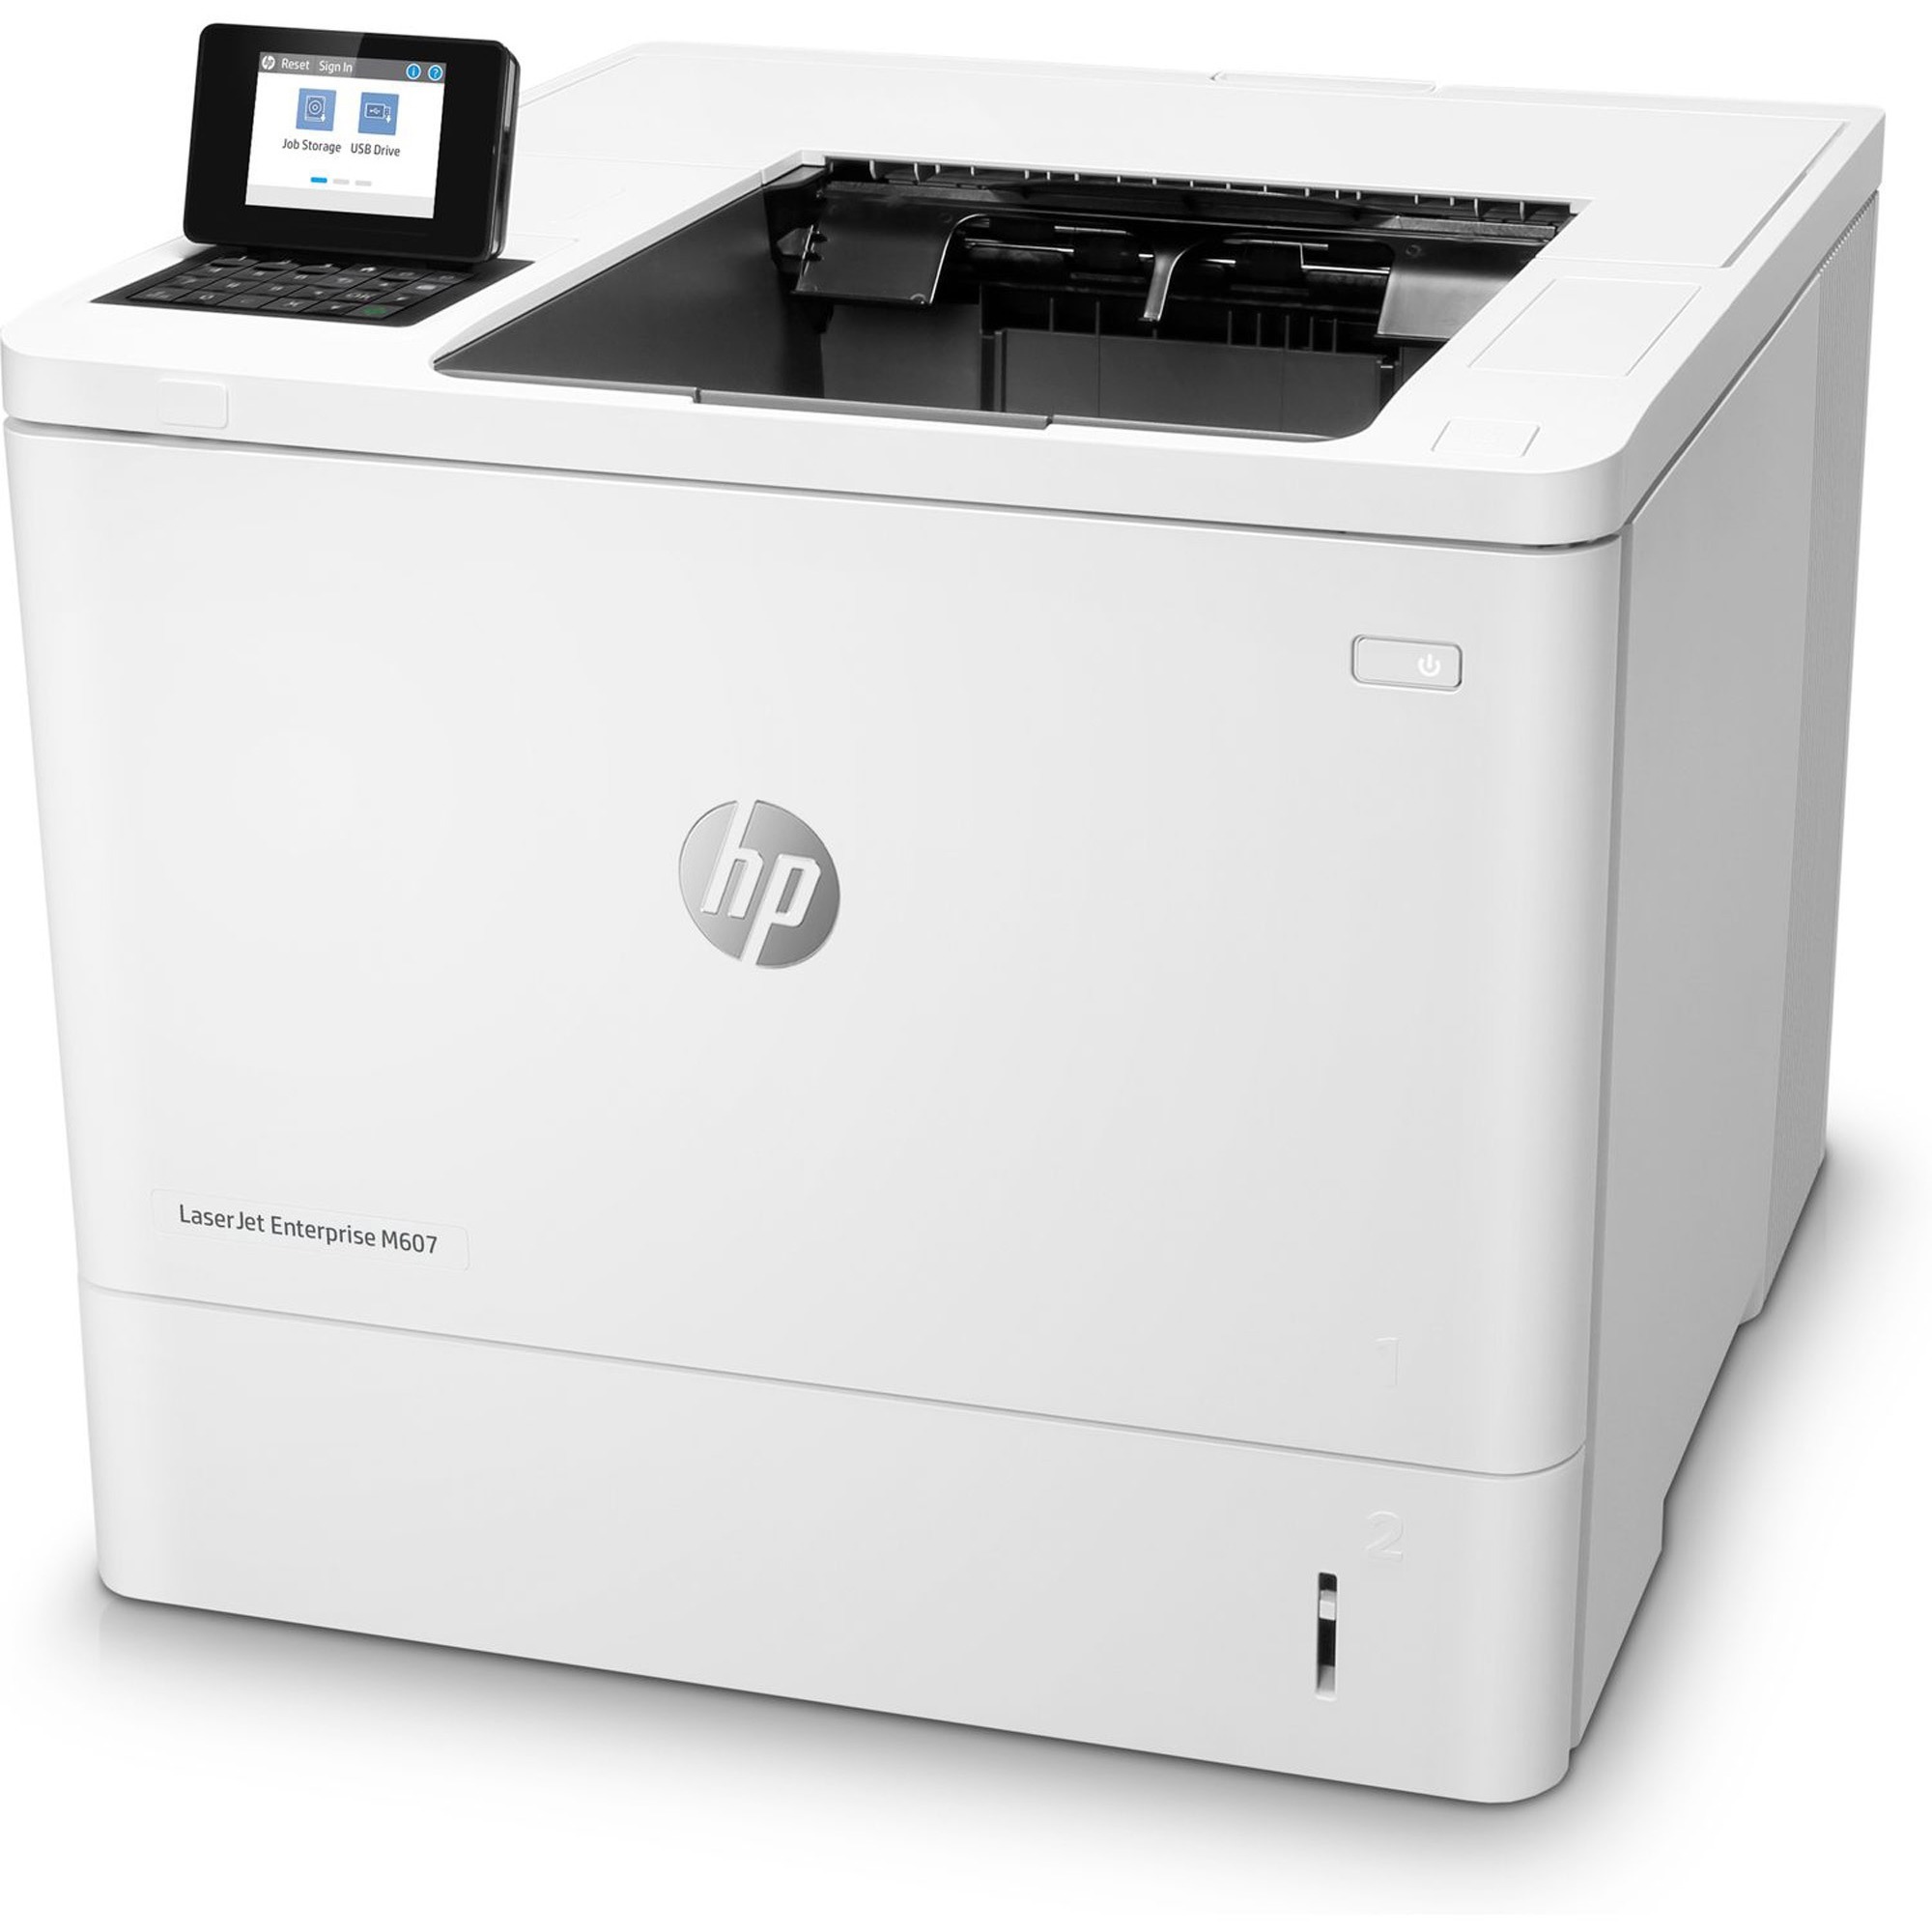 Skråstreg overtale sympatisk HP LaserJet M607 M607n Desktop Laser Printer - Monochrome